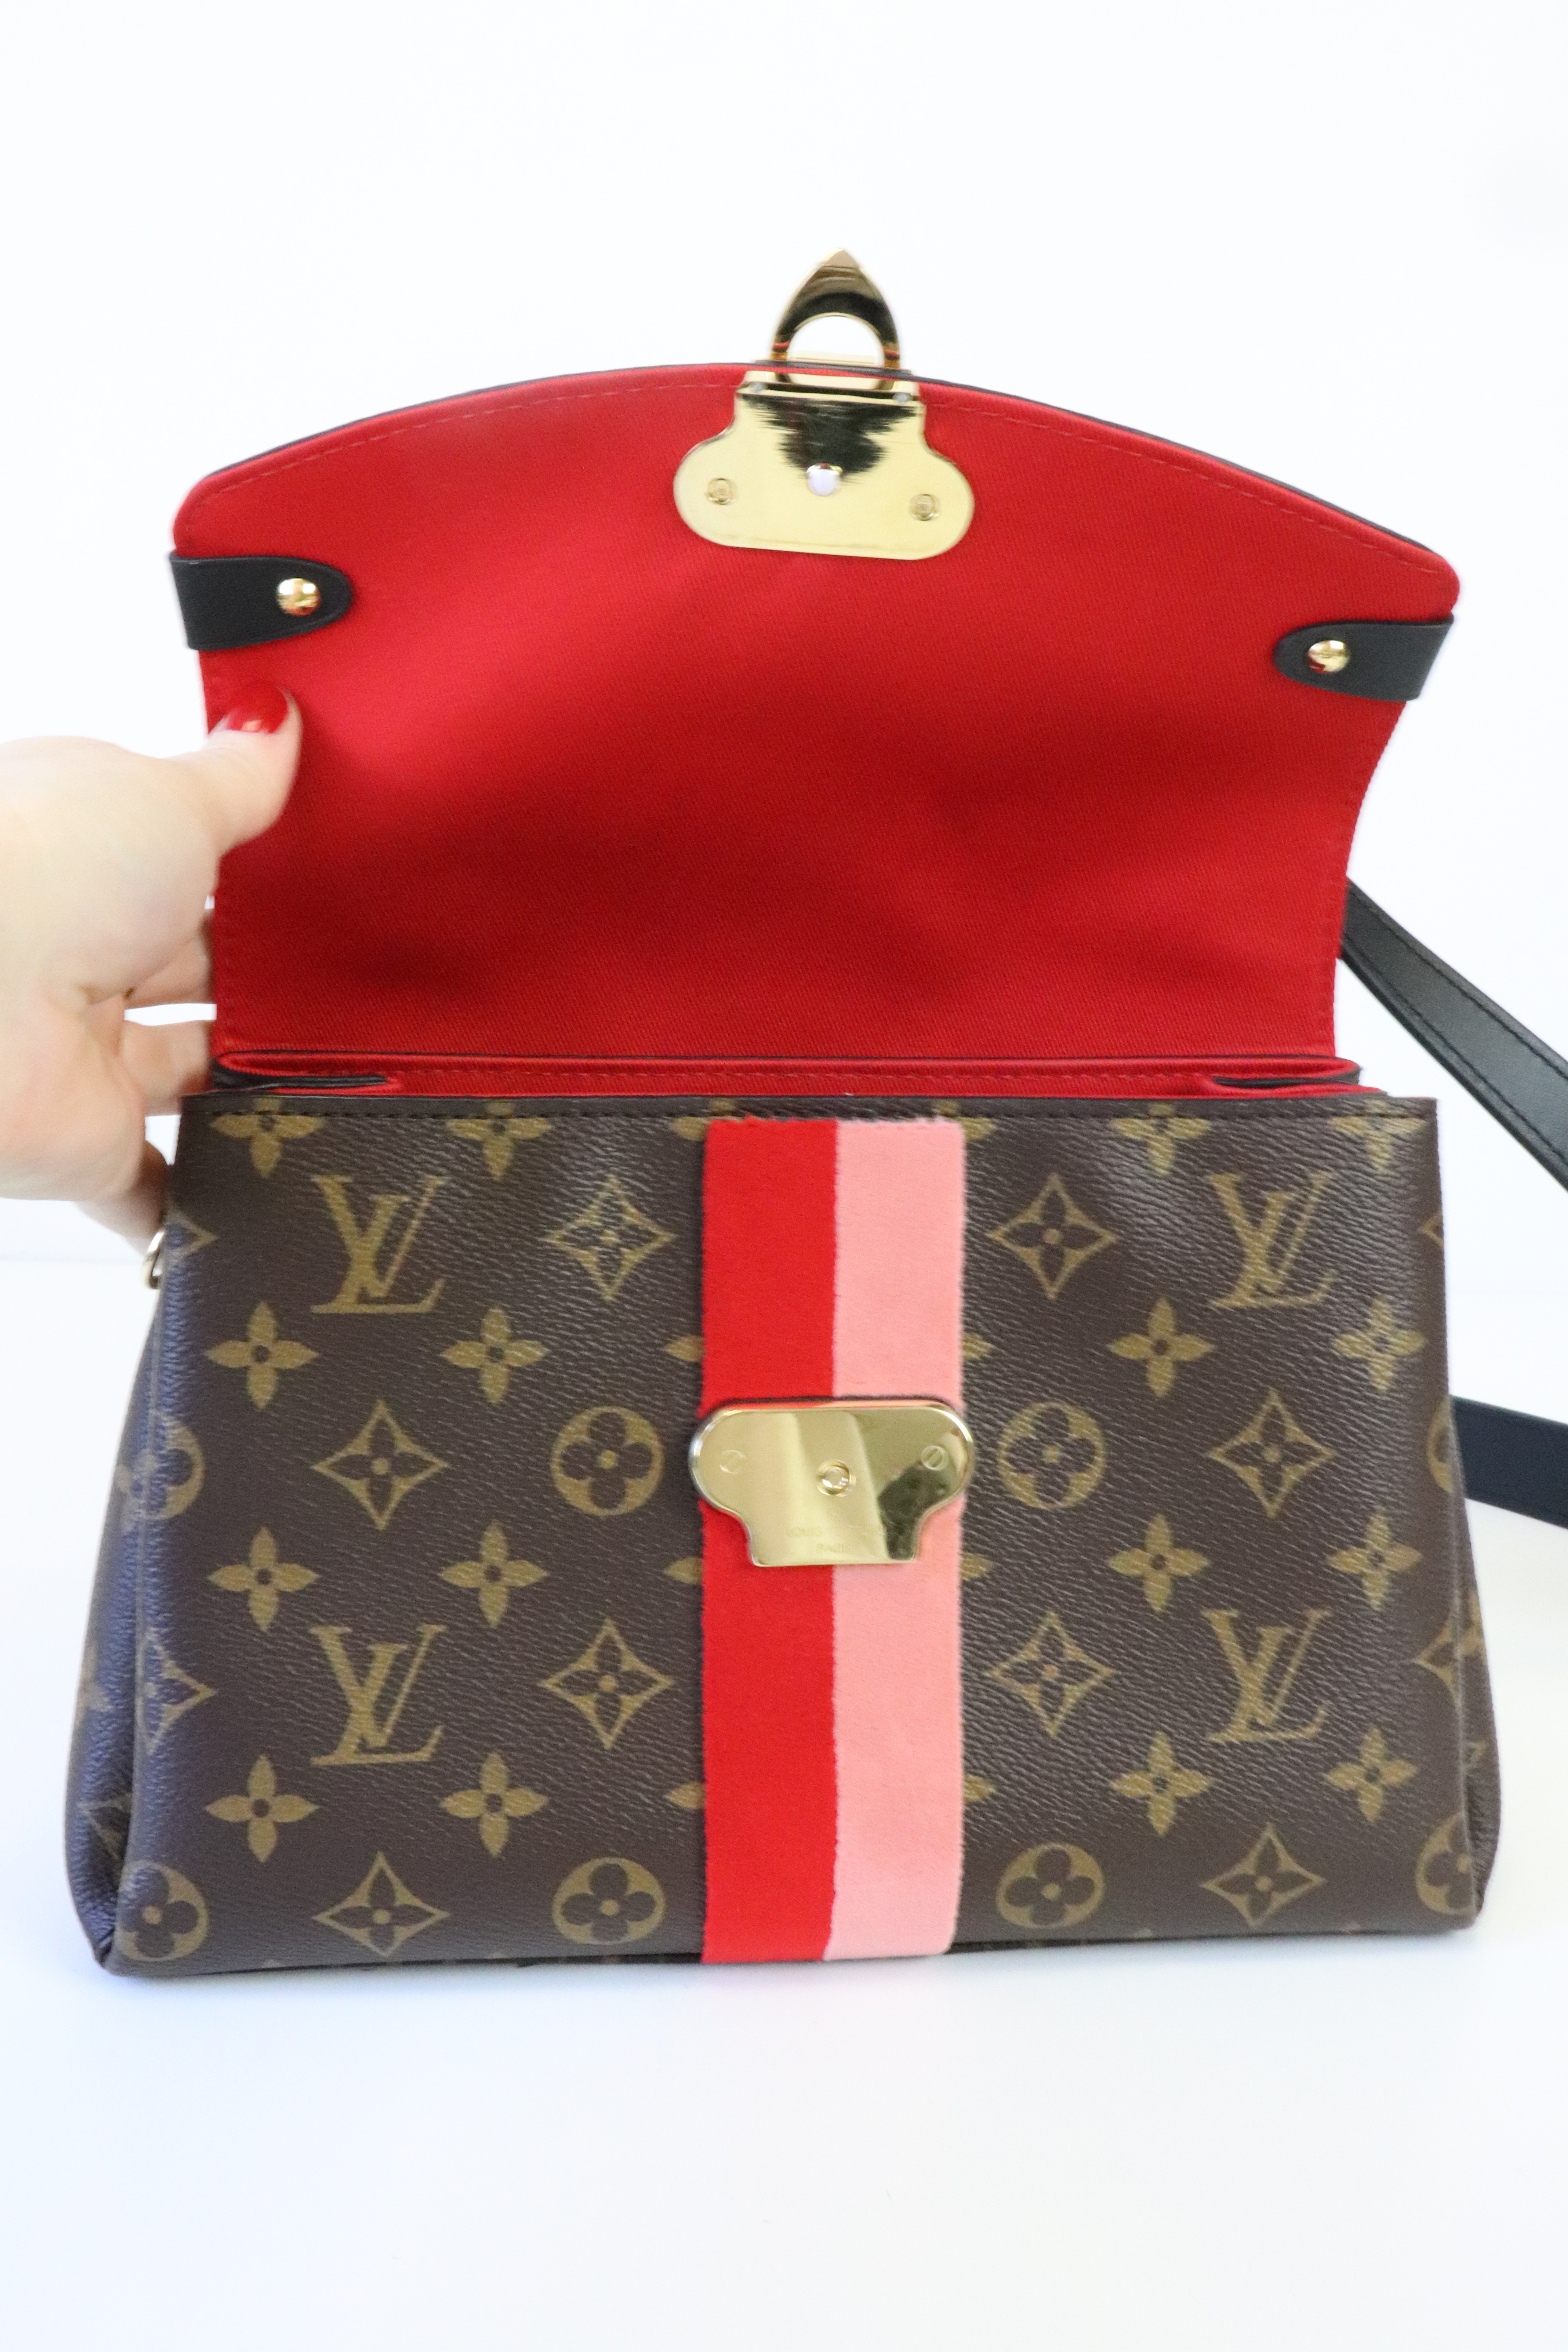 Túi xách LV nữ Louis Vuitton Georges BB Monogram 53941 chính hãng